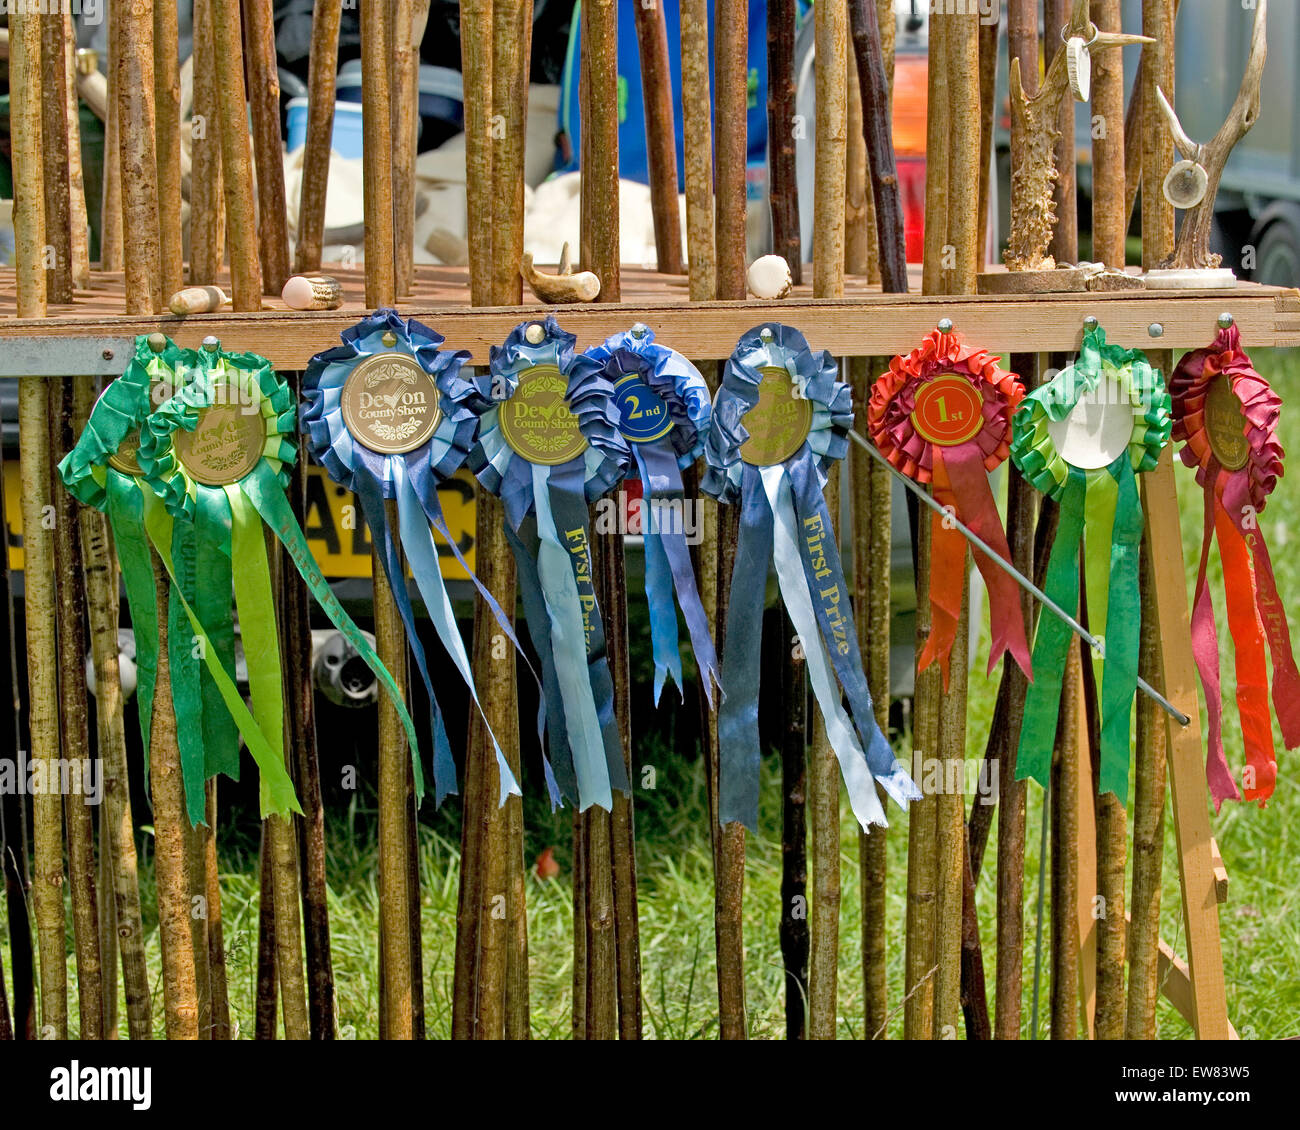 award winning stick maker Stock Photo